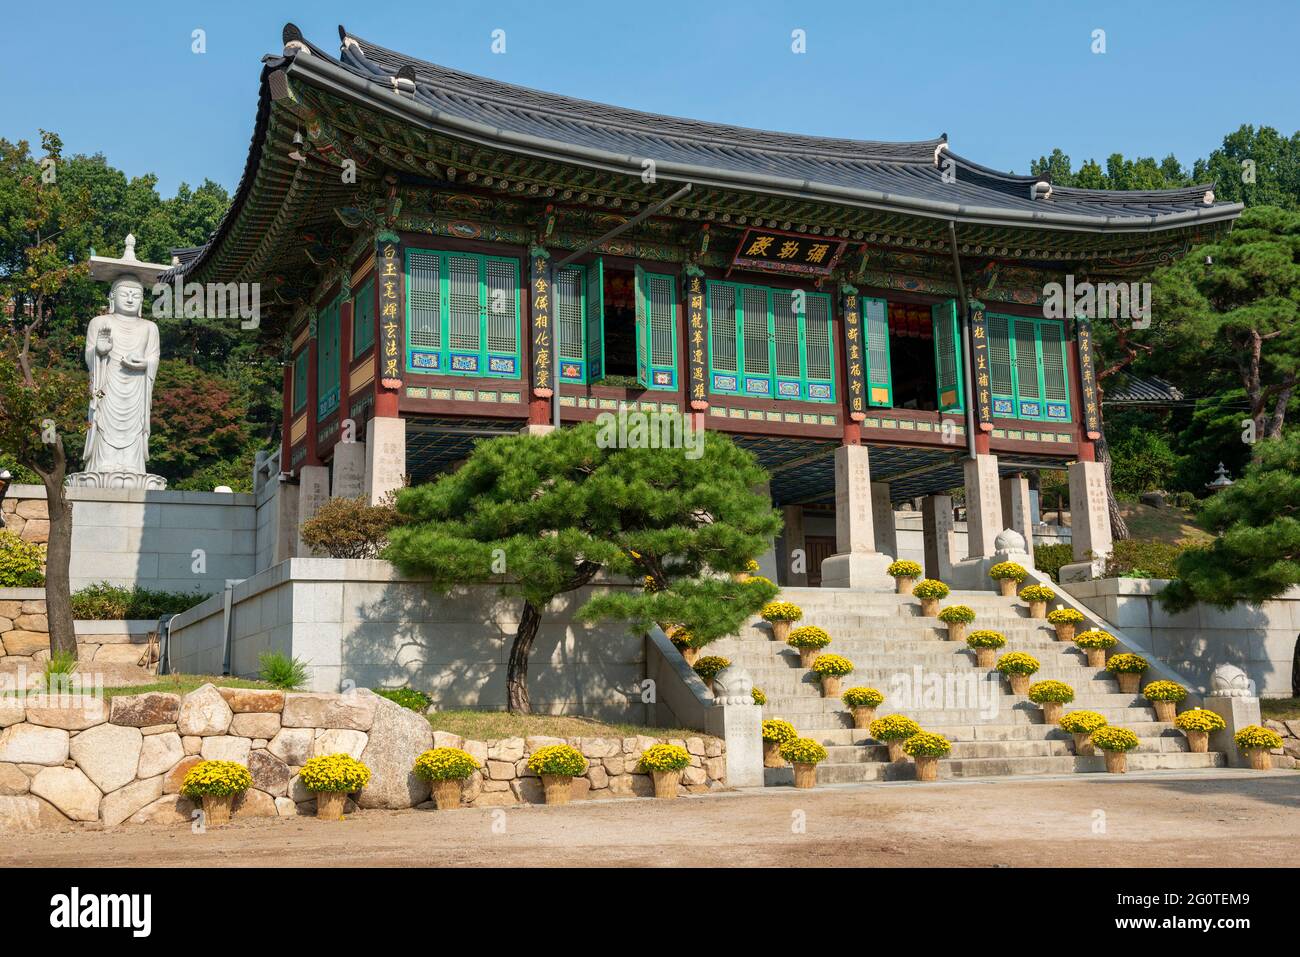 Statua di Buddha sullo sfondo di alberi verdi nel tempio di Bongeunsa nel distretto di Gangnam a Seoul, Corea del Sud. E' una popolare attrazione turistica dell'Asia. Foto Stock